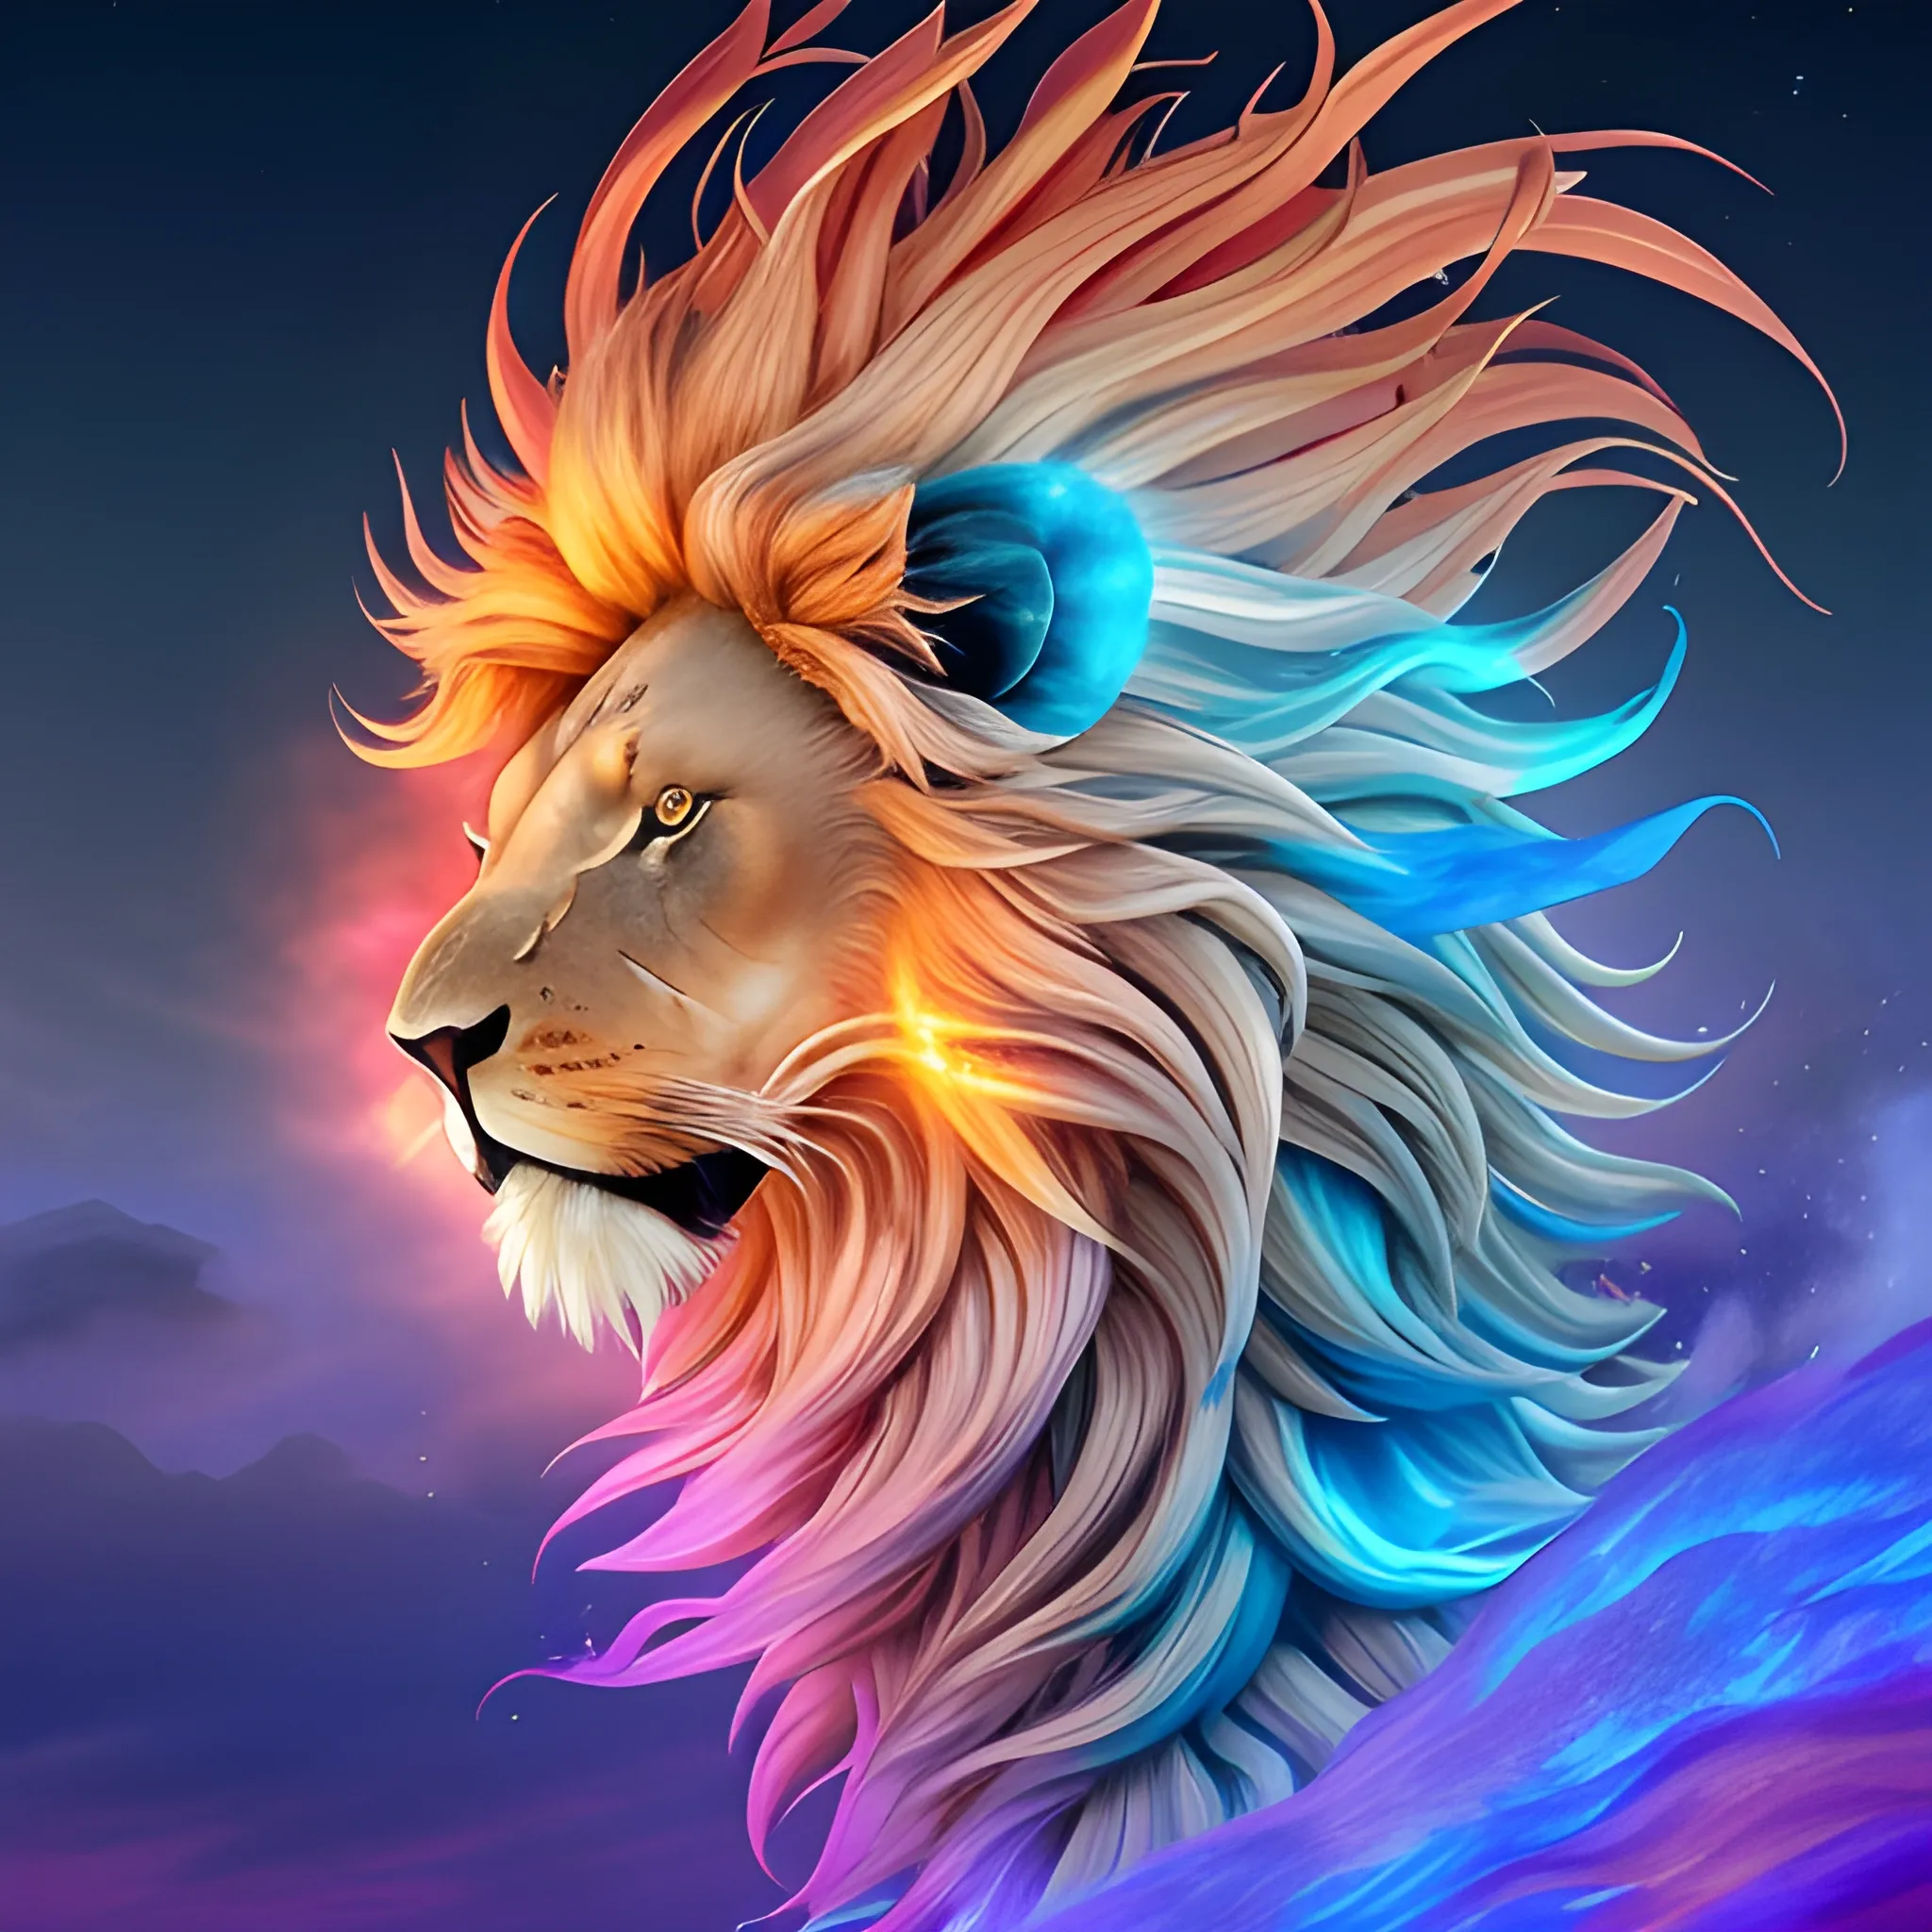 lion spectral de feu doré avec une crinière flamboyante et des ailes de plumes étincellantes, survolant un océan translucide peuplé de poissons multicolores, des nuages orageux en arrière plan et un soleil rougeoyant couchant à l'horizon , 3D